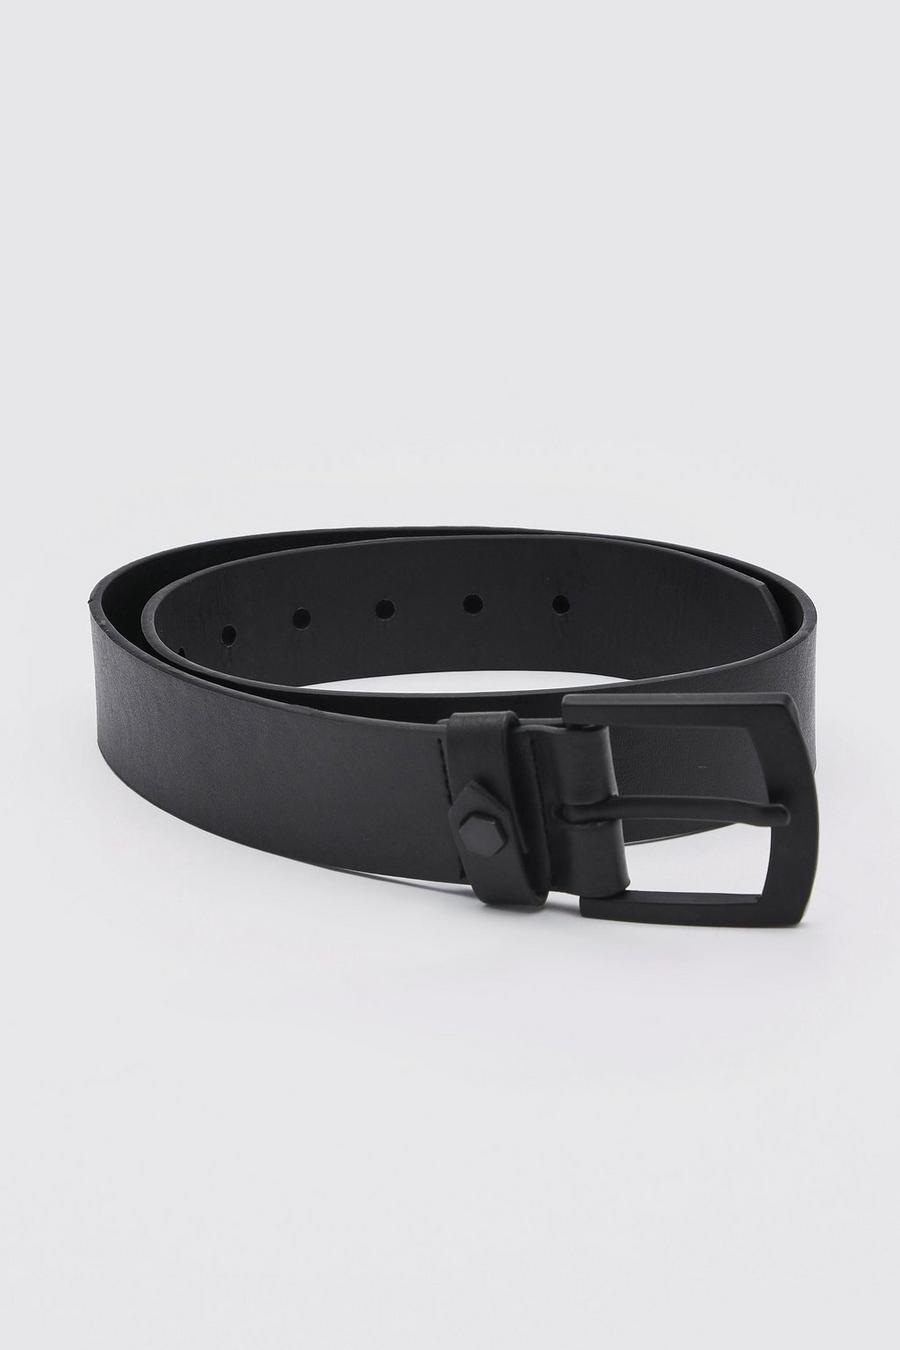 Smart Matte Black Buckle Leather Look Belt image number 1